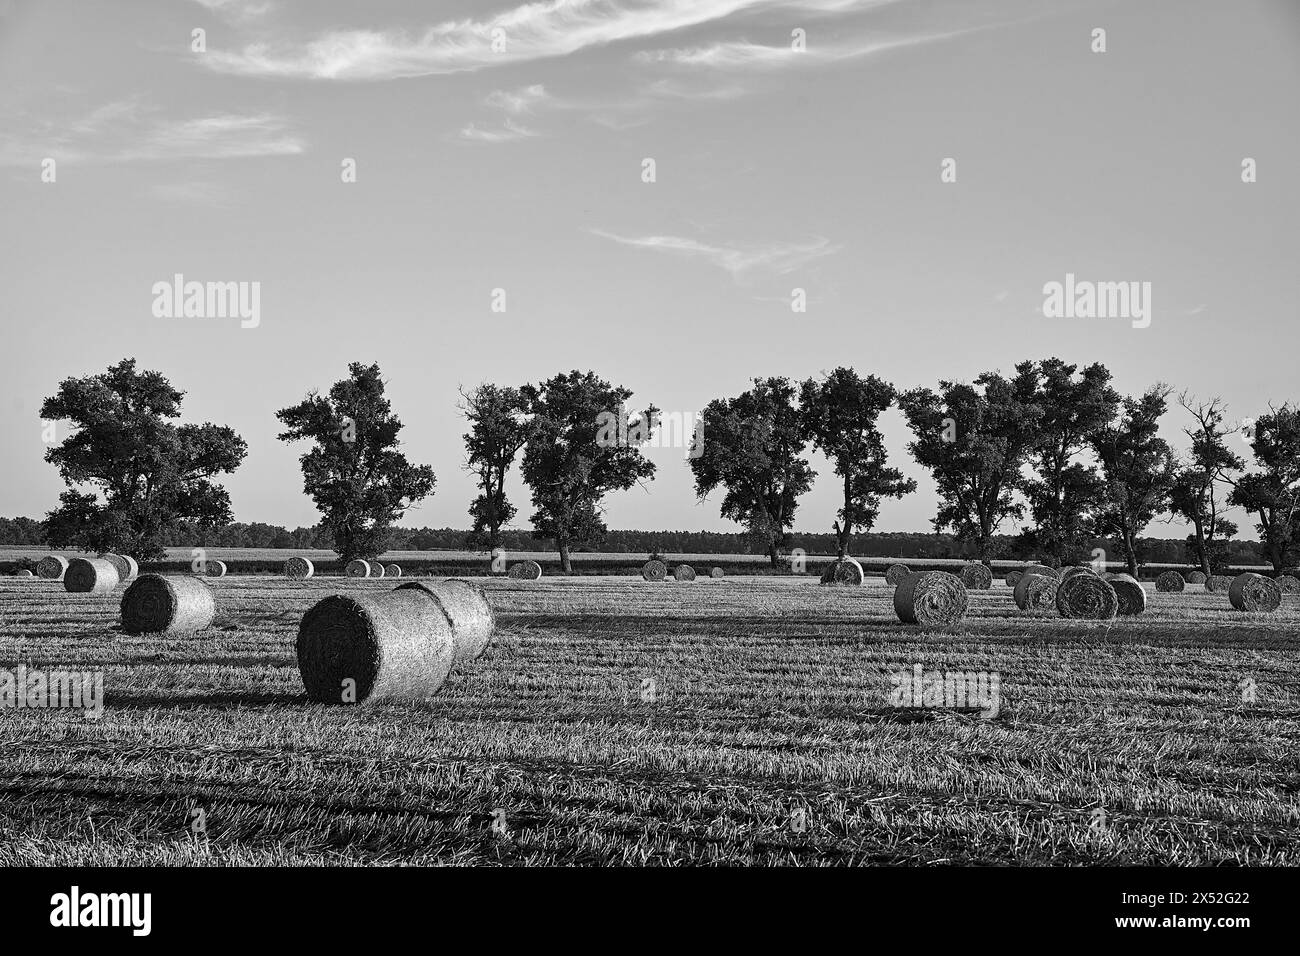 Paysage agricole avec chaumes, balles de paille et arbres pendant l'été, Pologne, monochrome Banque D'Images